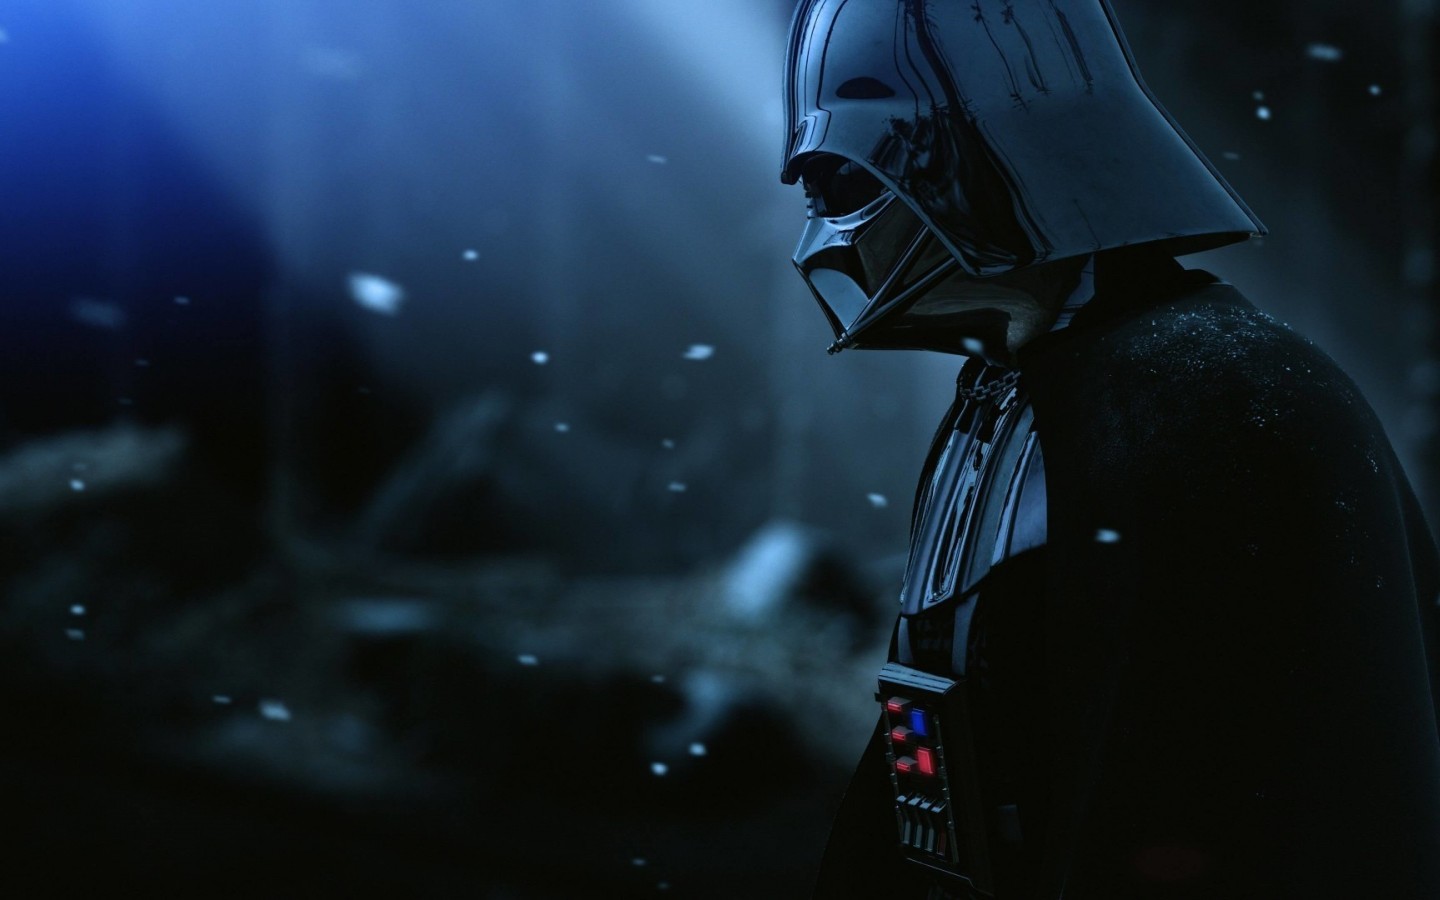 Darth Vader - The Force Unleashed 2 Wallpaper for Desktop 1440x900